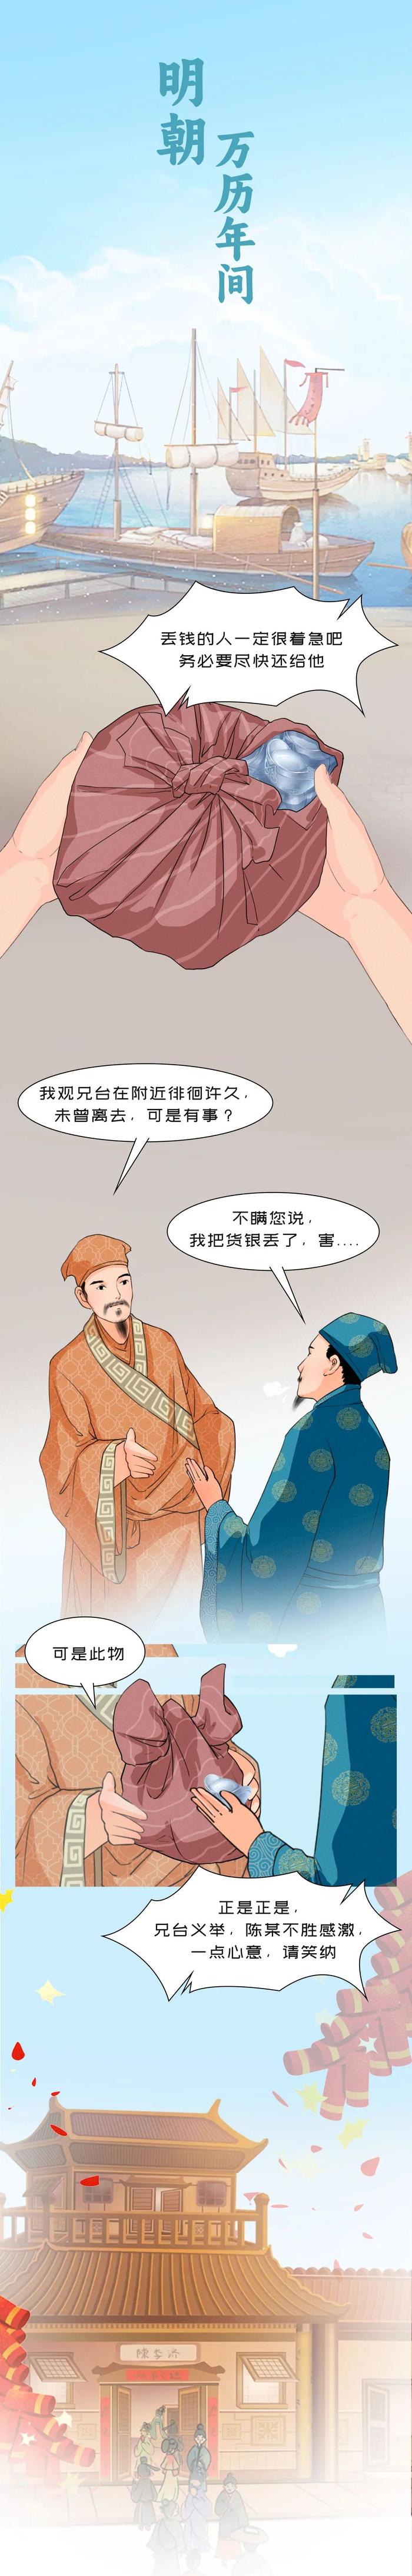 祖师爷入职记 | 解密四百年陈李济的济世奇缘